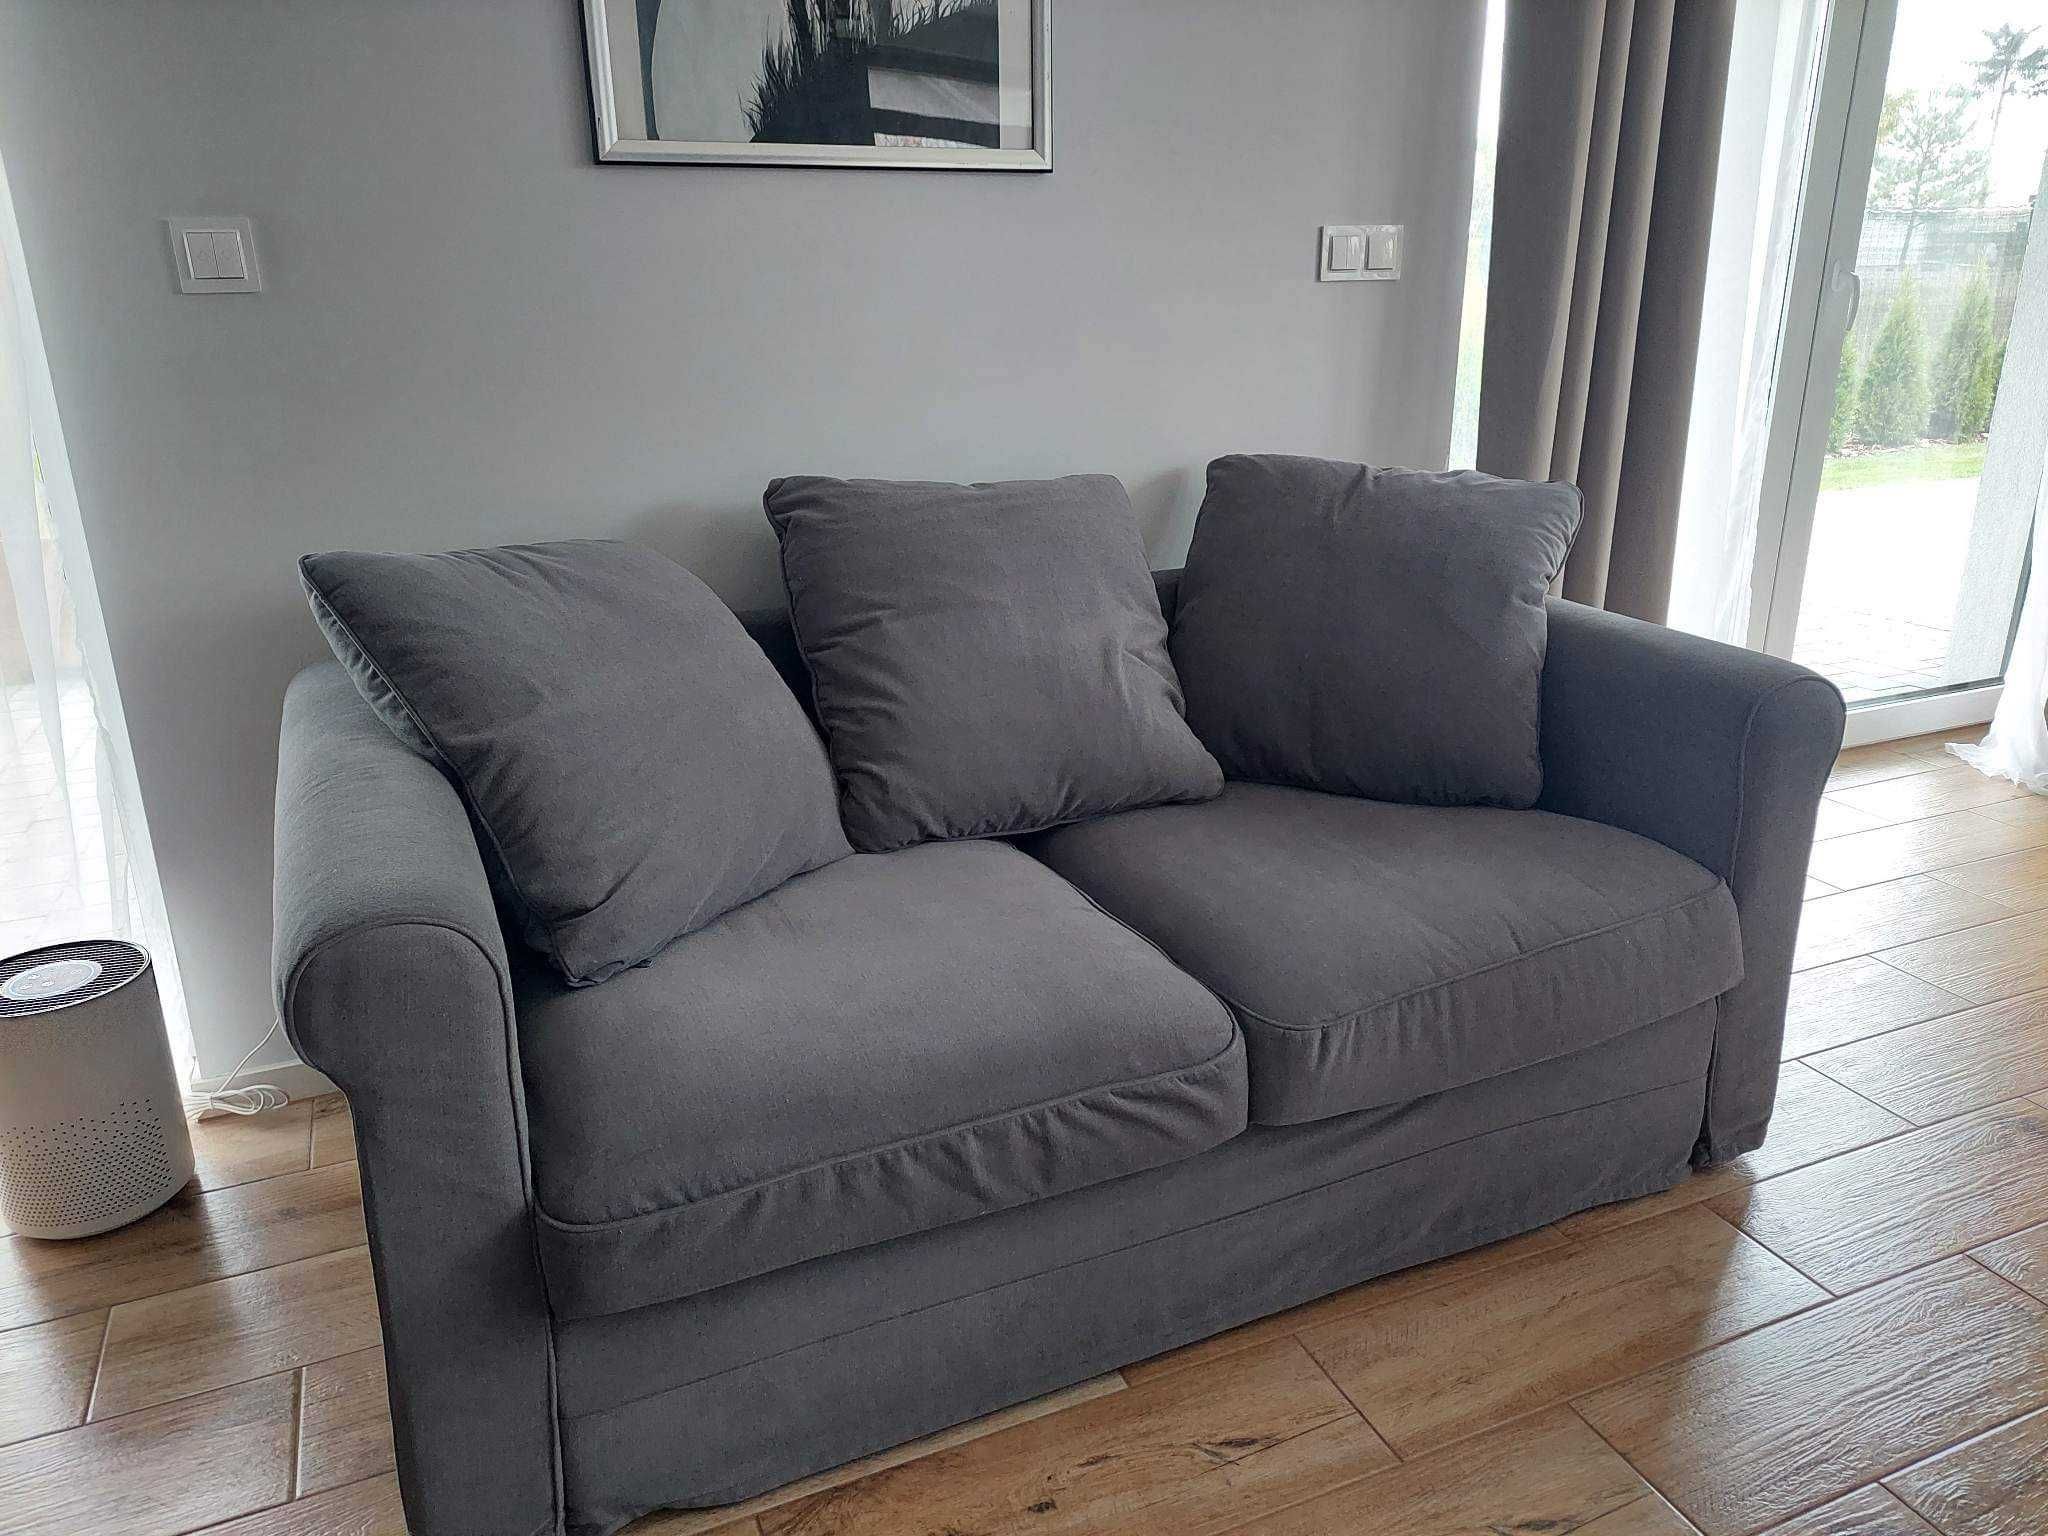 Sofa GRÖNLID Ikea 2-osobowa średnioszara NIEROZKŁADANA